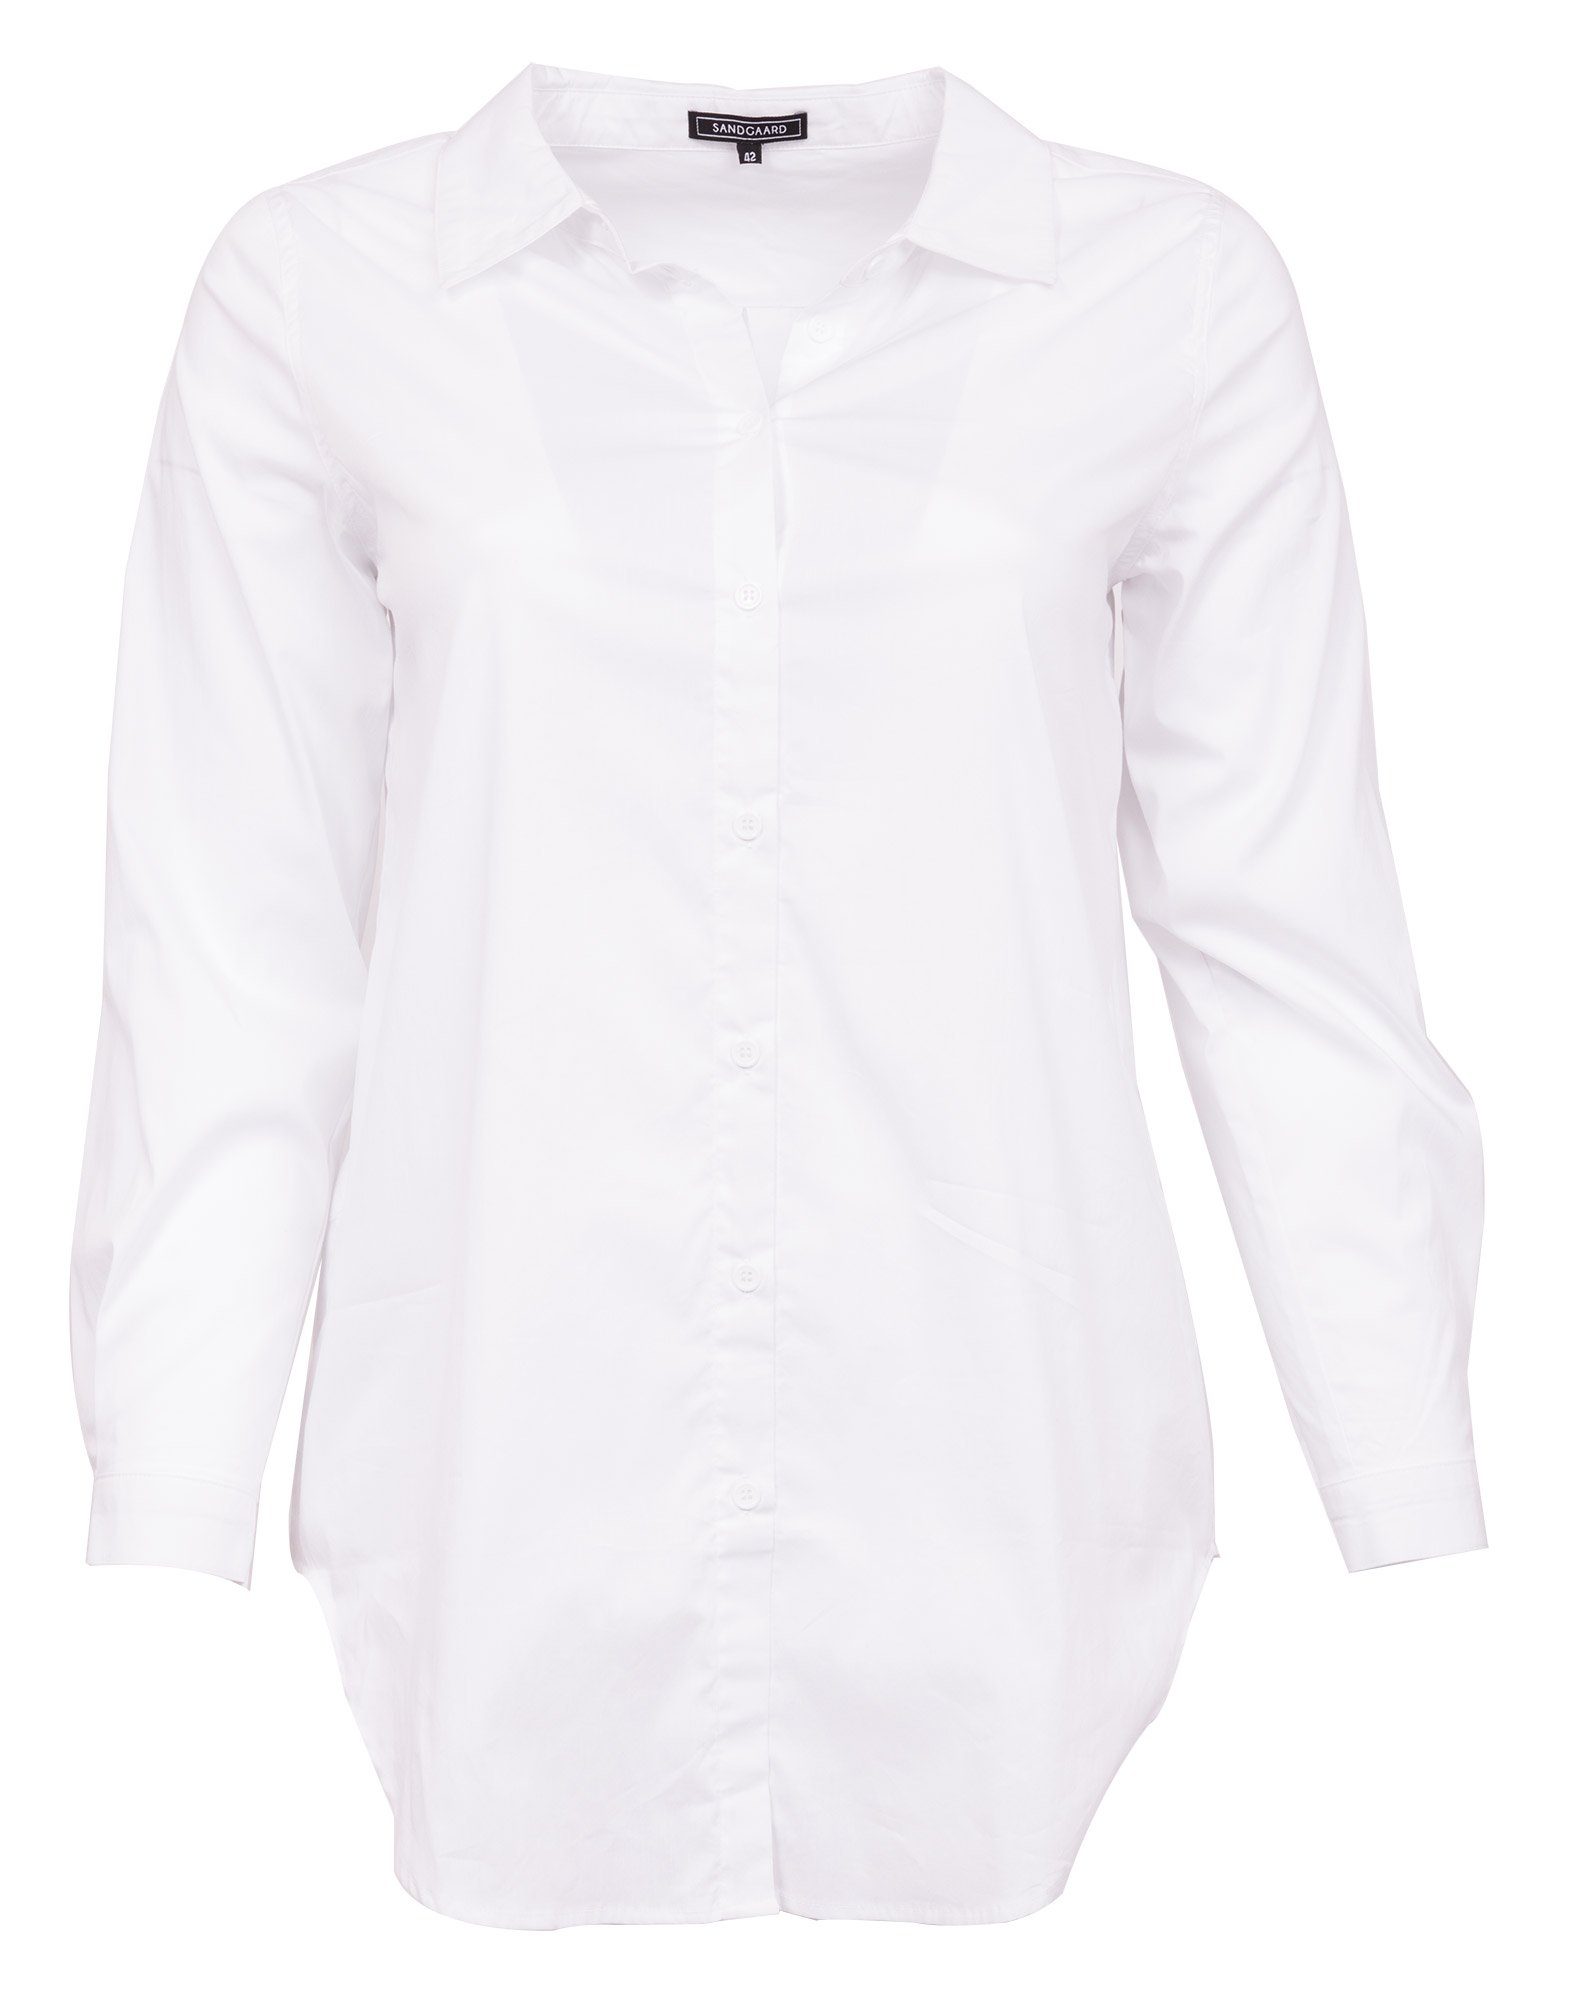 STOCKHOLM - Hvid skjorte med stretch  fra Sandgaard (fra Studio)